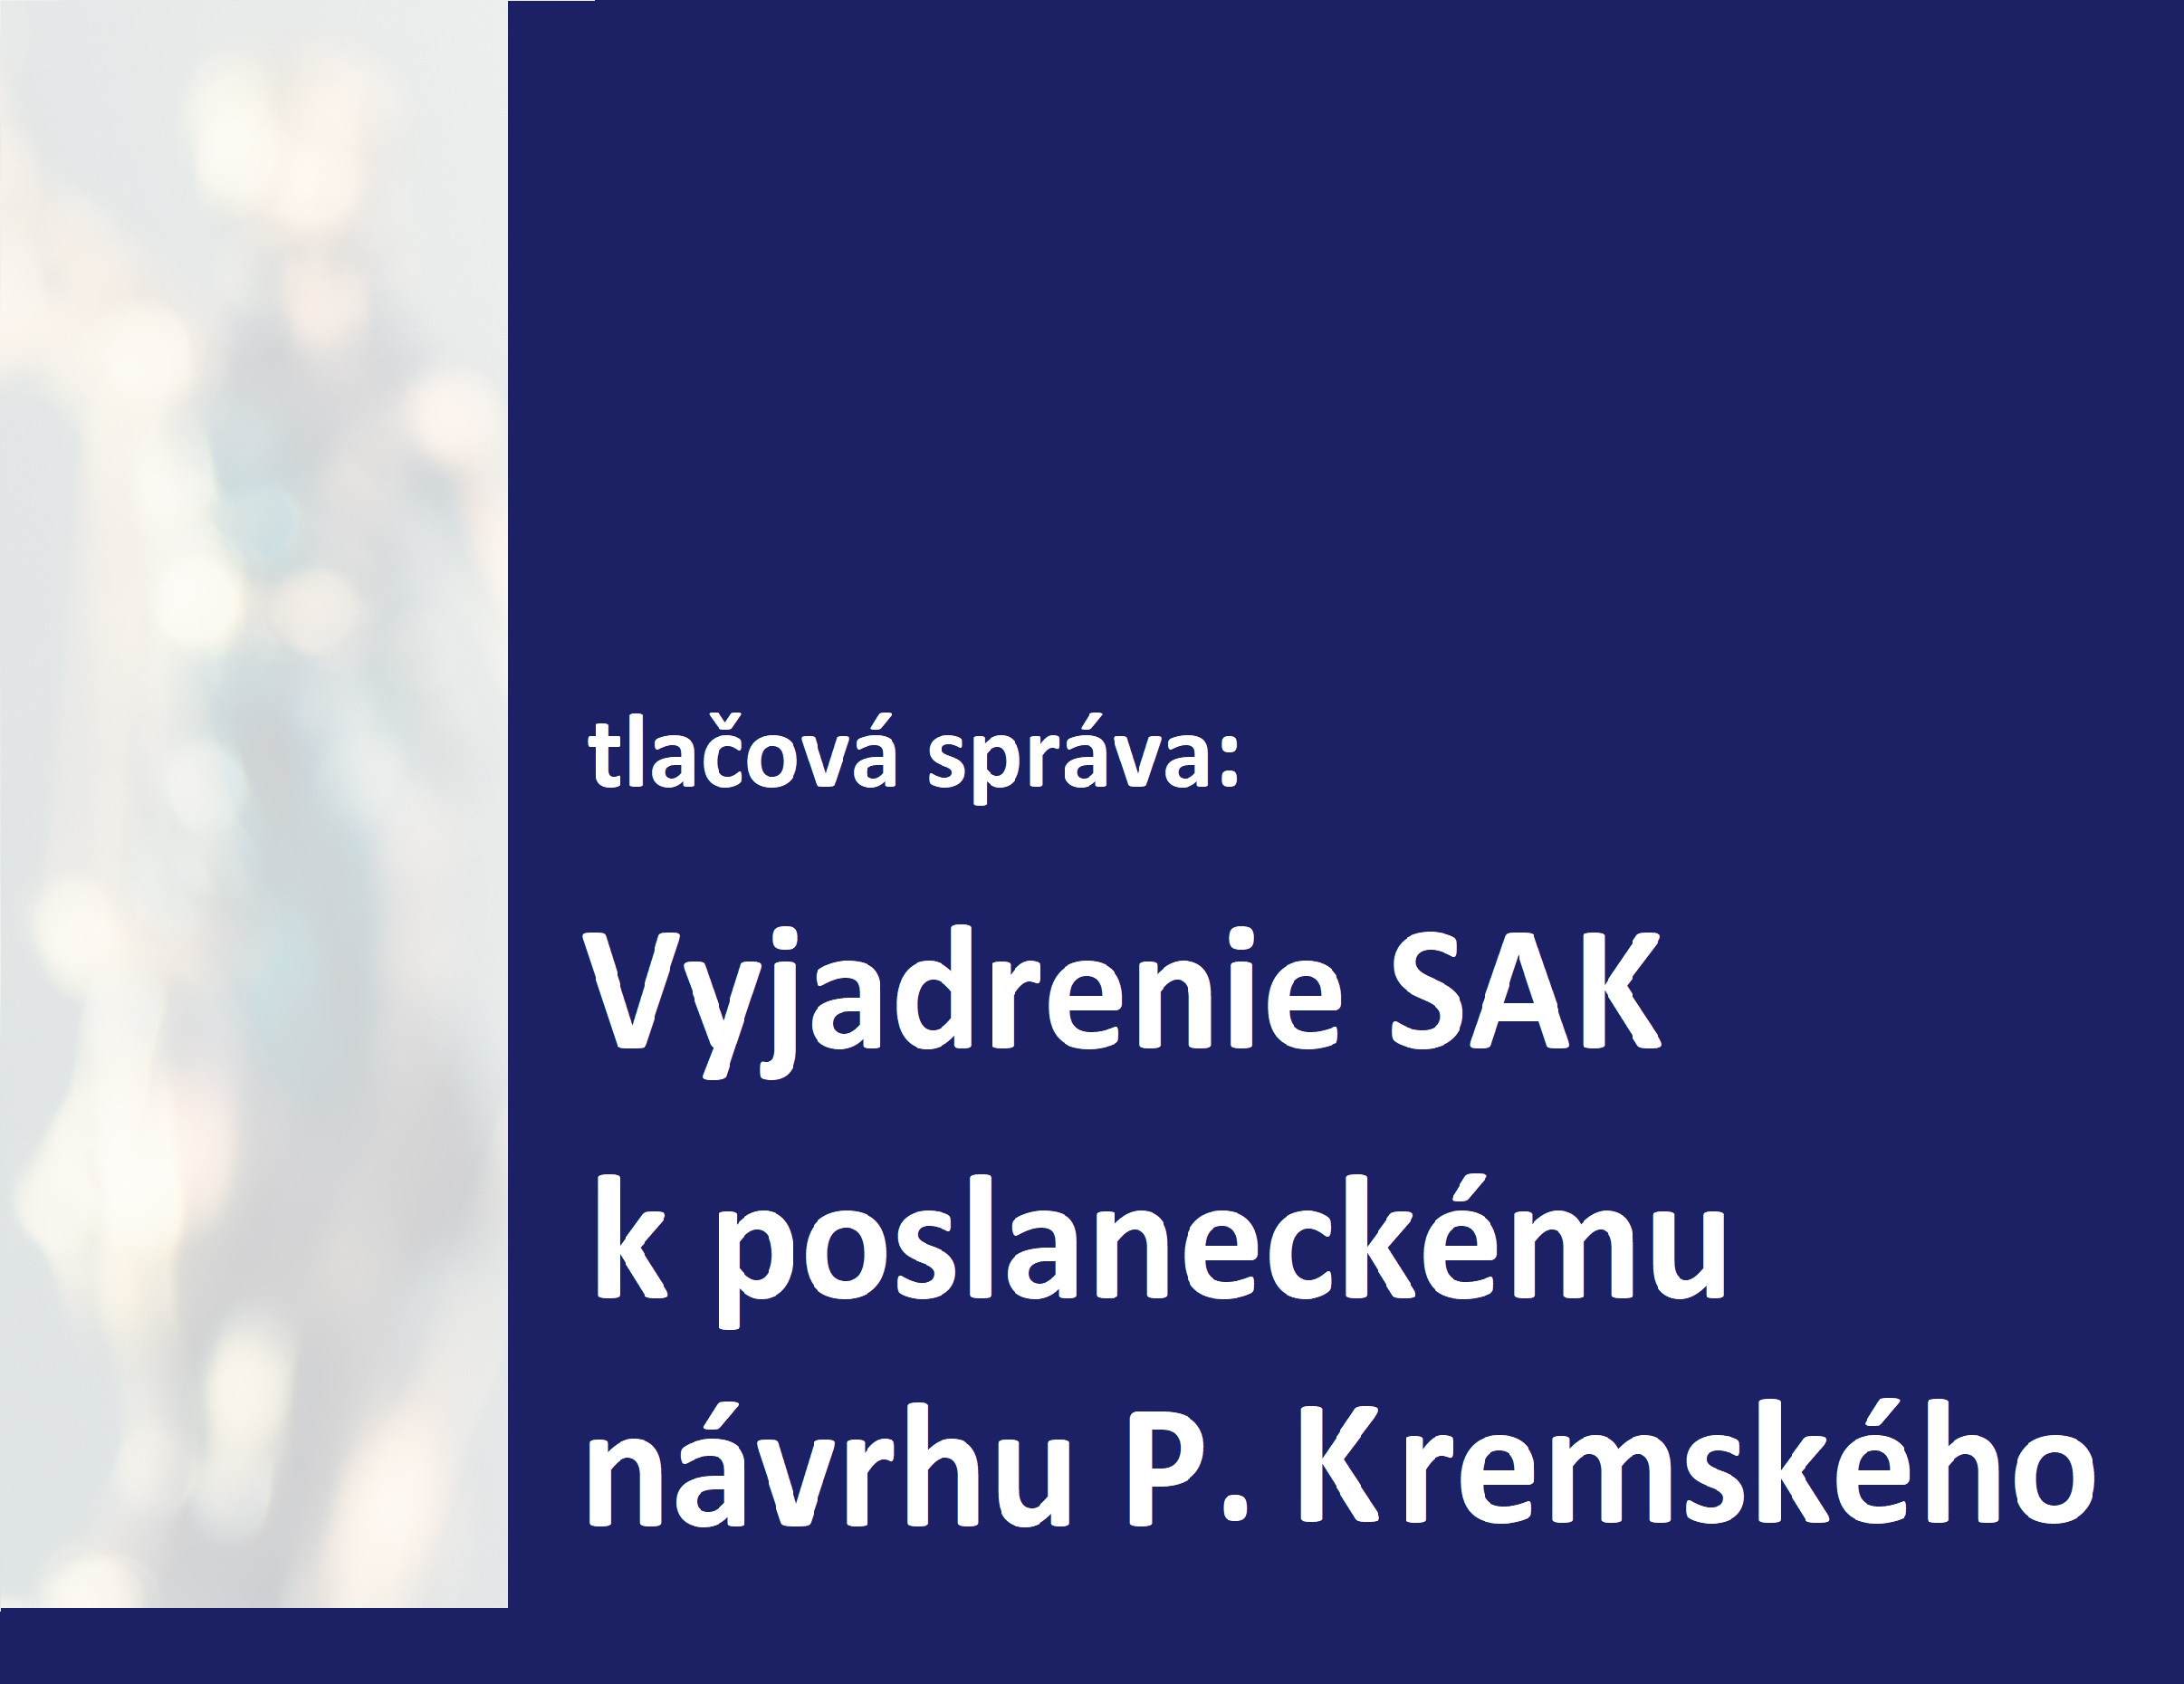 Vyjadrenie Slovenskej advokátskej komory k poslaneckému návrhu Petra Kremského